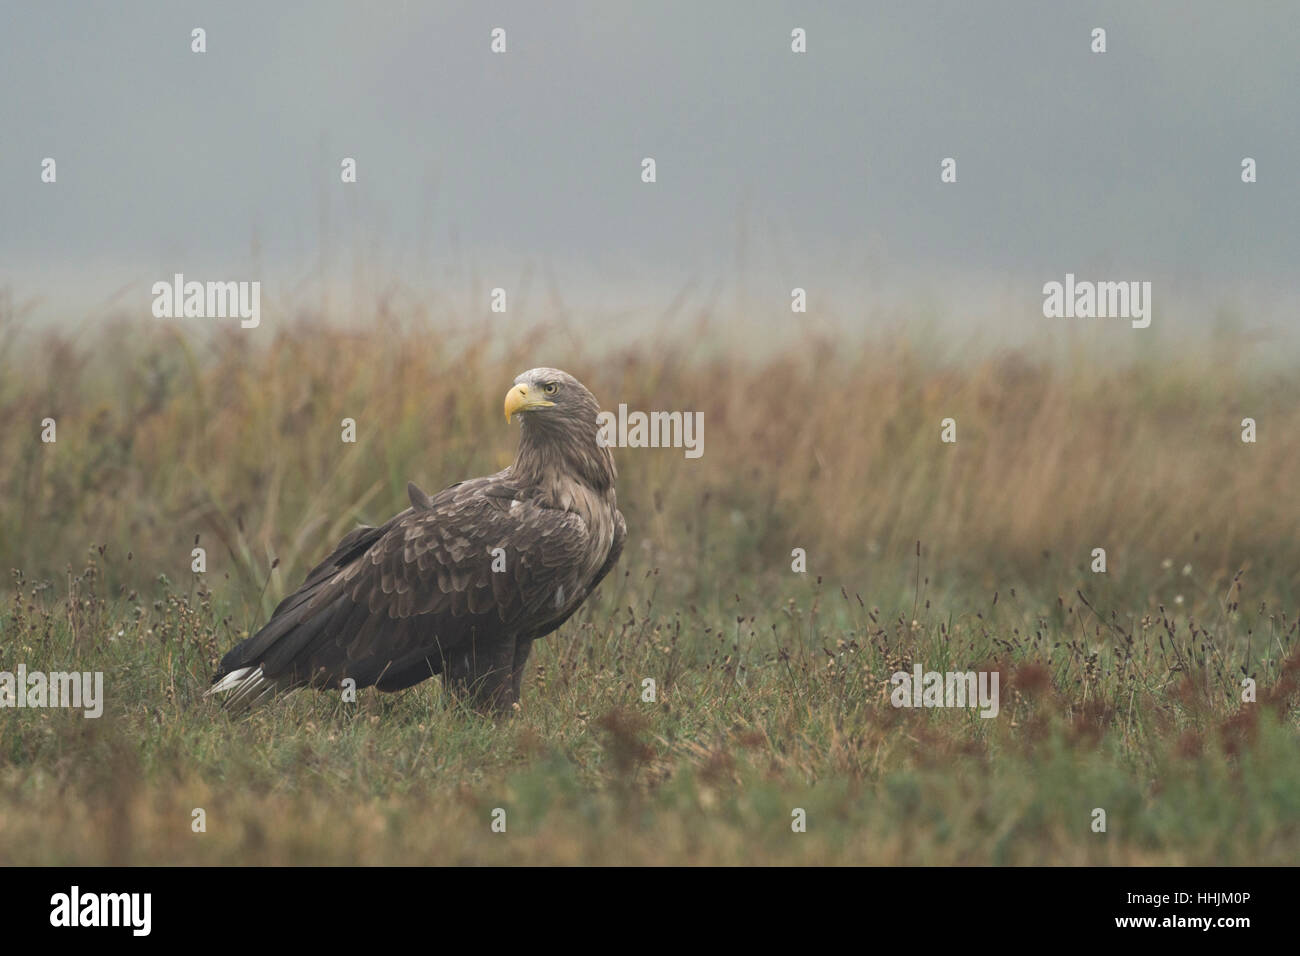 El águila de cola blanca / Mar Haliaeetus albicilla Eagle ( ) Adulto, sentados en el suelo de hierba, girar la cabeza, mirar alrededor. Foto de stock